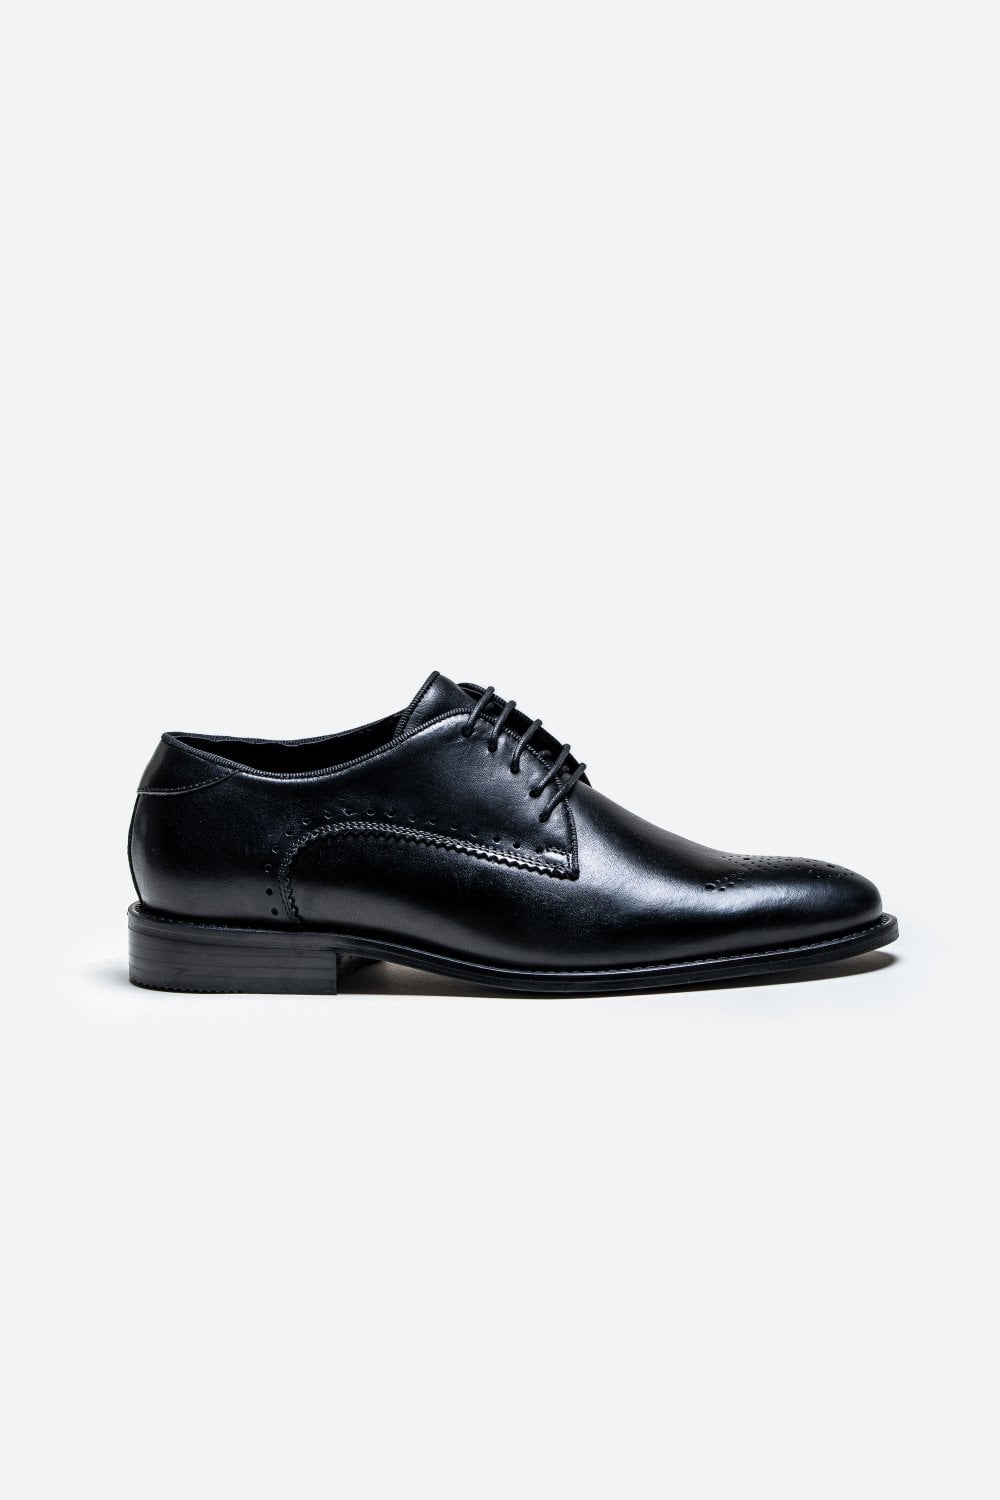 Cavani Madrid Schoenen Black - Wingtip Brogue - schoenen